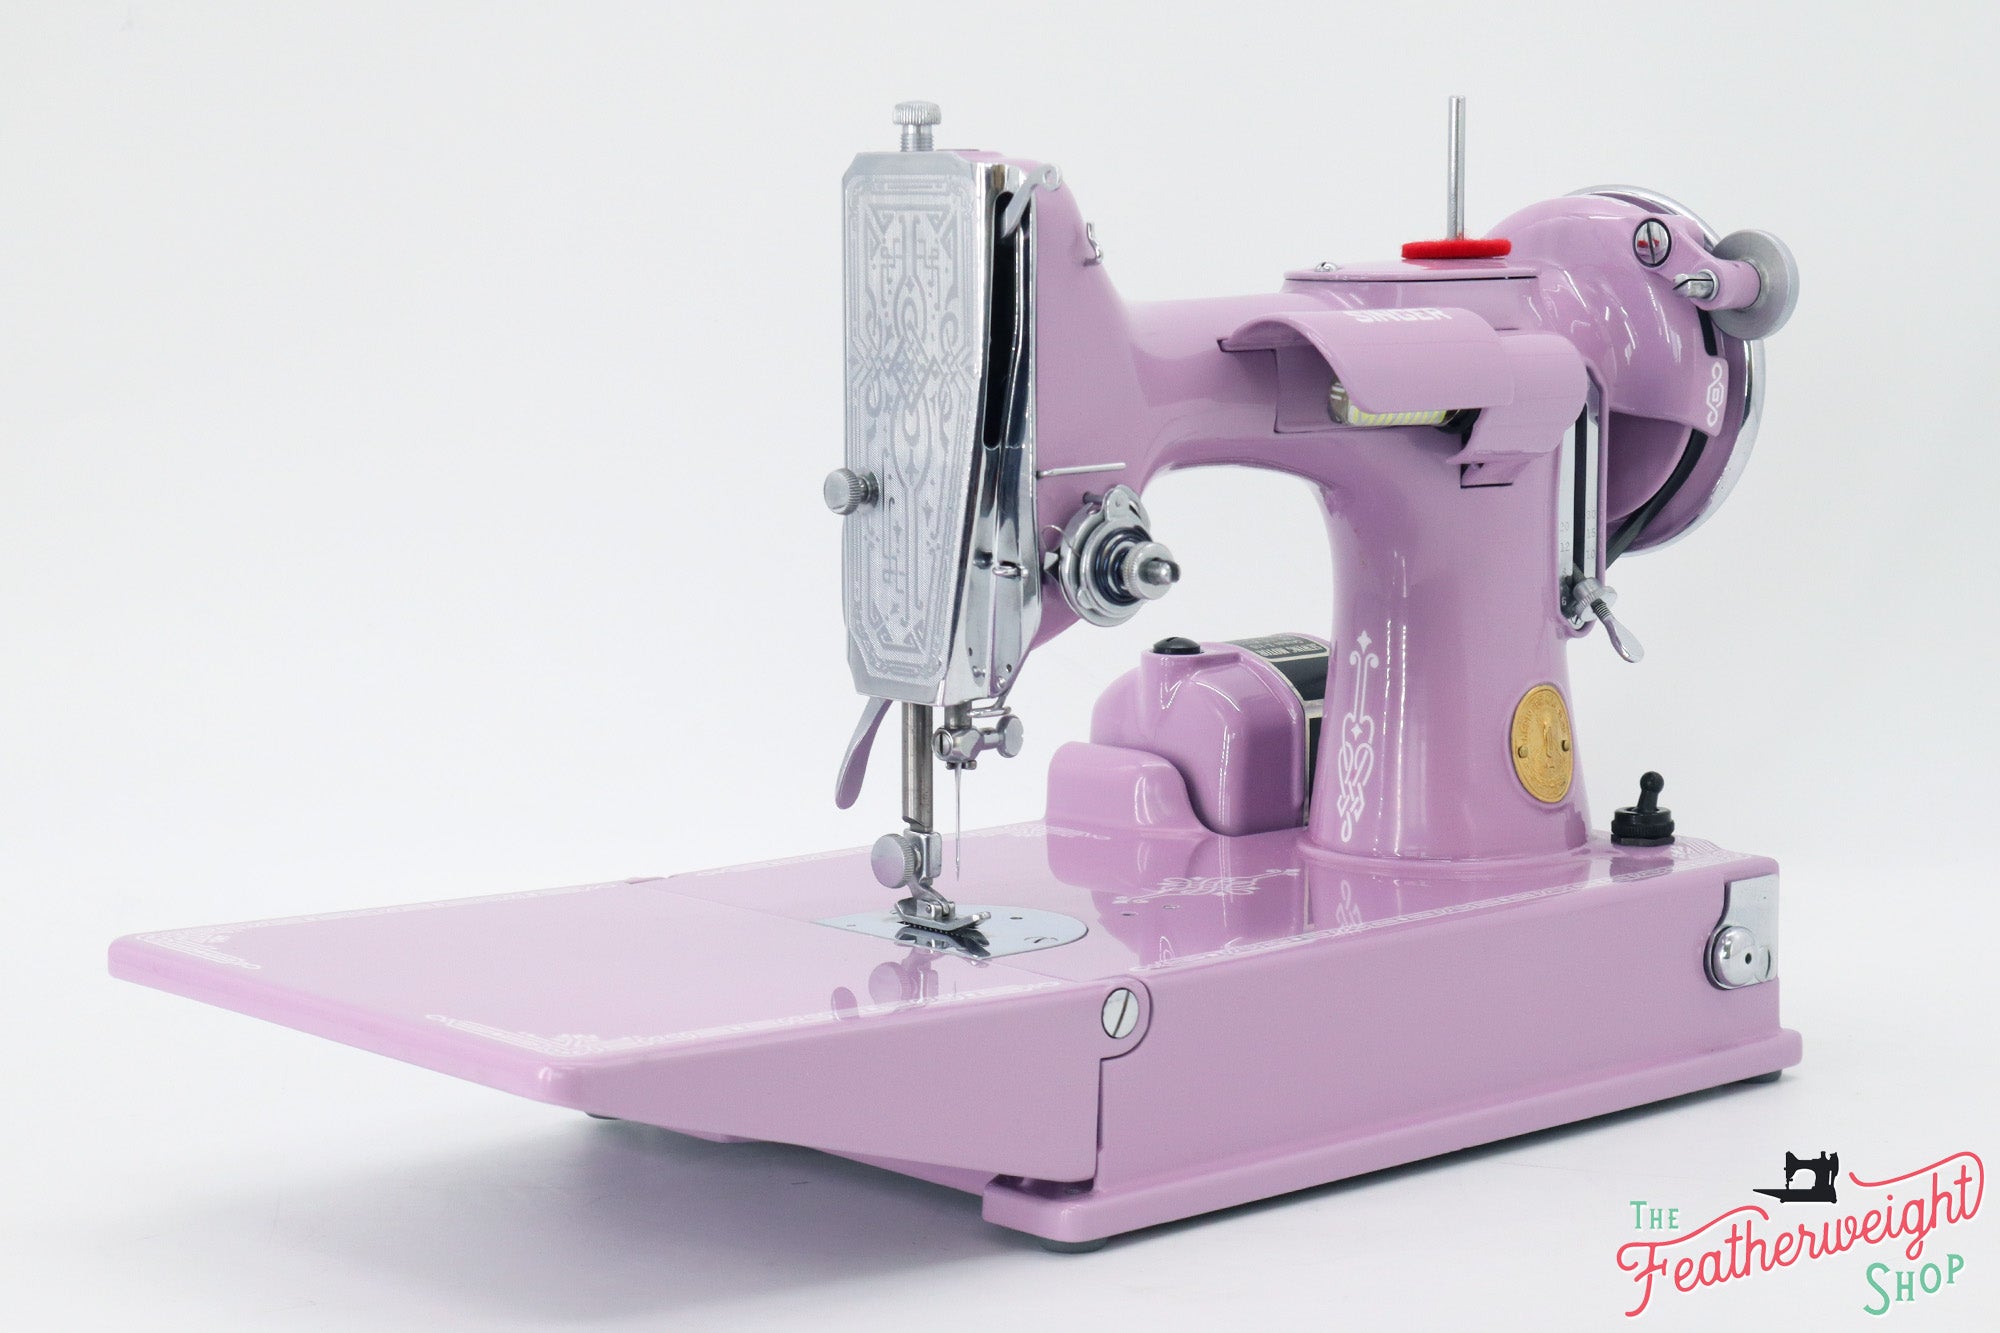 Singer M1500 Sewing Machine - Refurbished